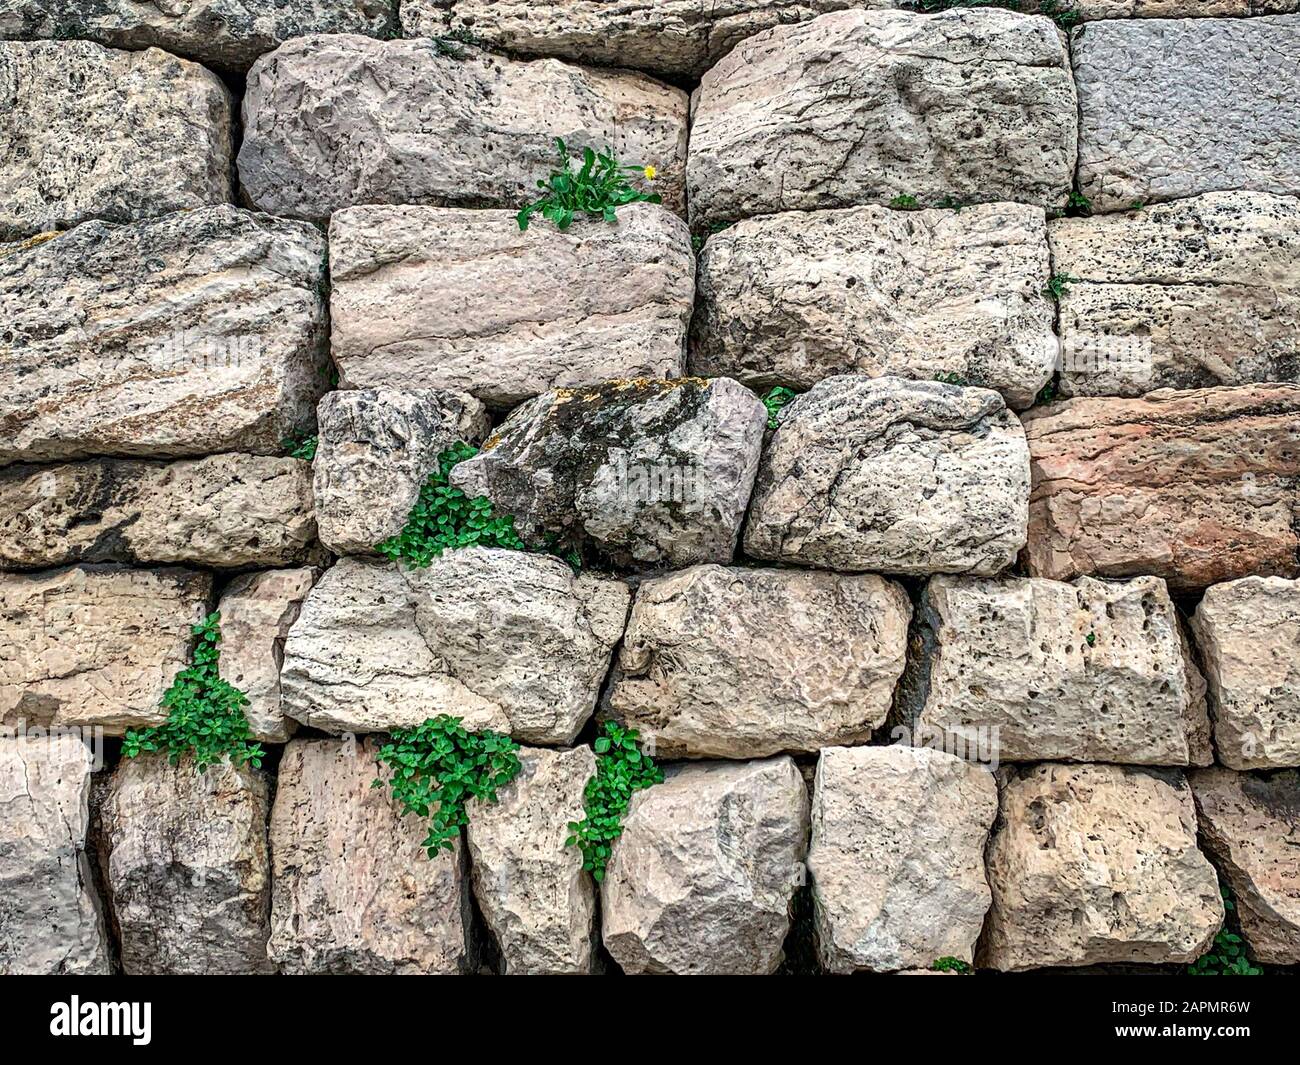 Alte Steinmauer aus großen Kalksteinen in Athen, Region Attika in Griechenland. Riesige, antike Steinblöcke, die zu einer Mauer gehäuft wurden. Foto. Stockfoto